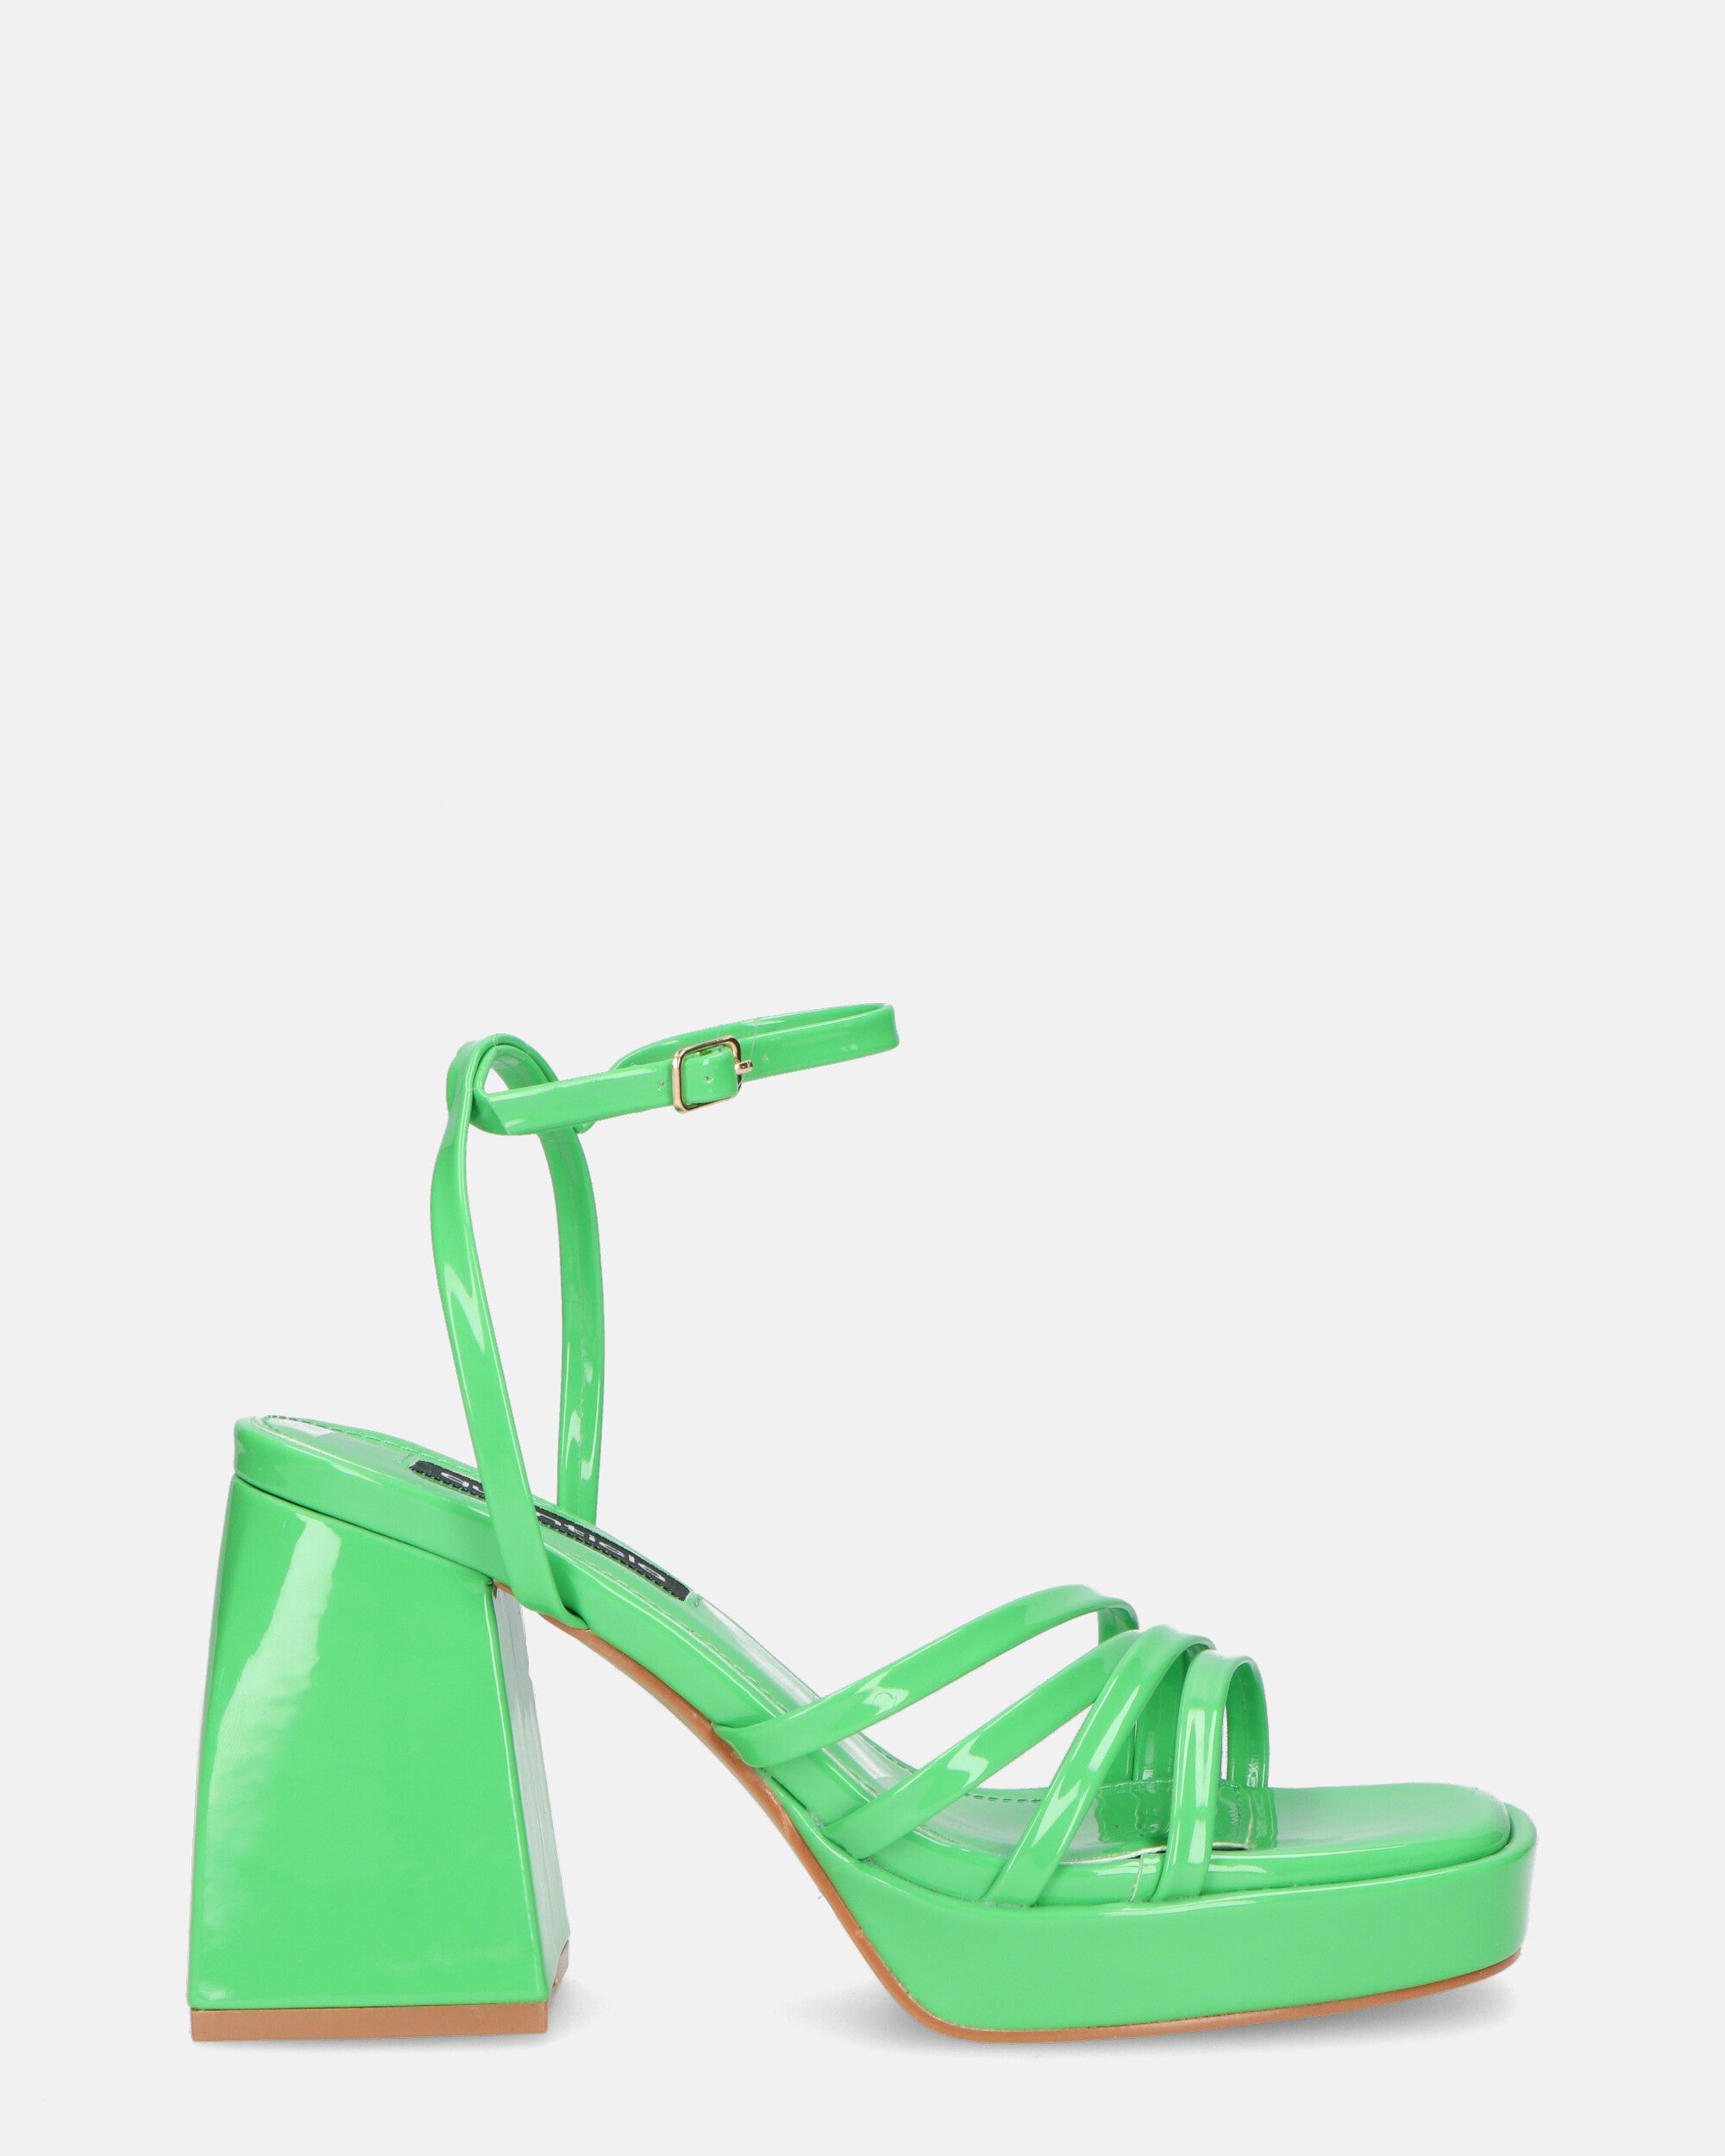 WINONA - sandali in glassy verde con tacco squadrato